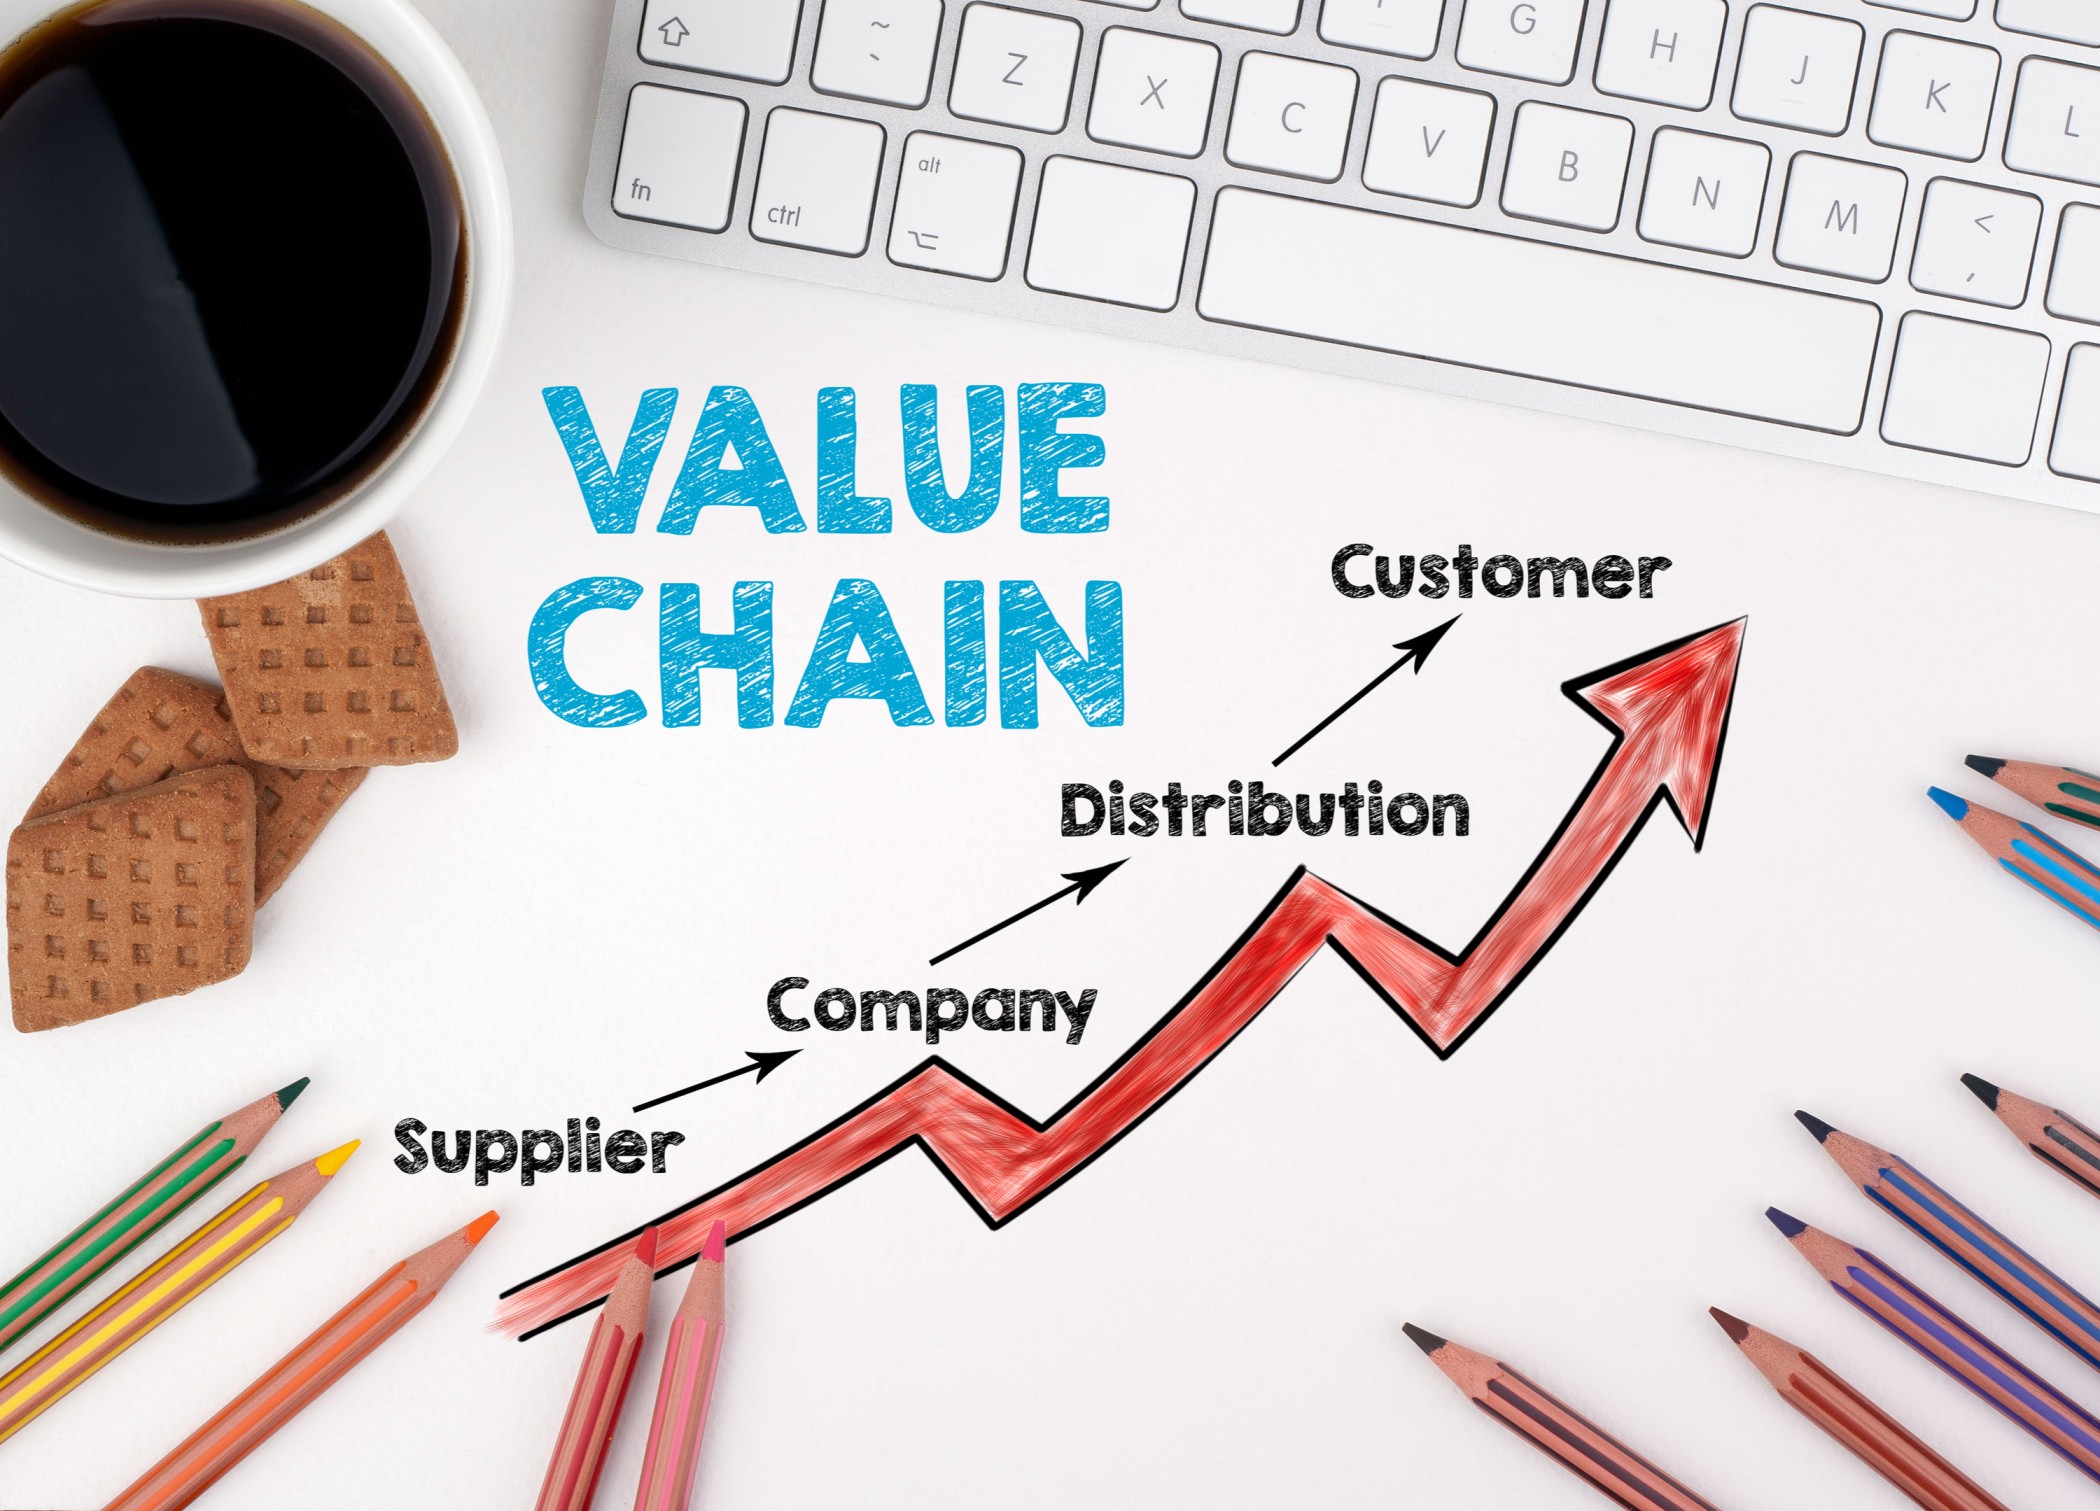 amazon value chain analysis